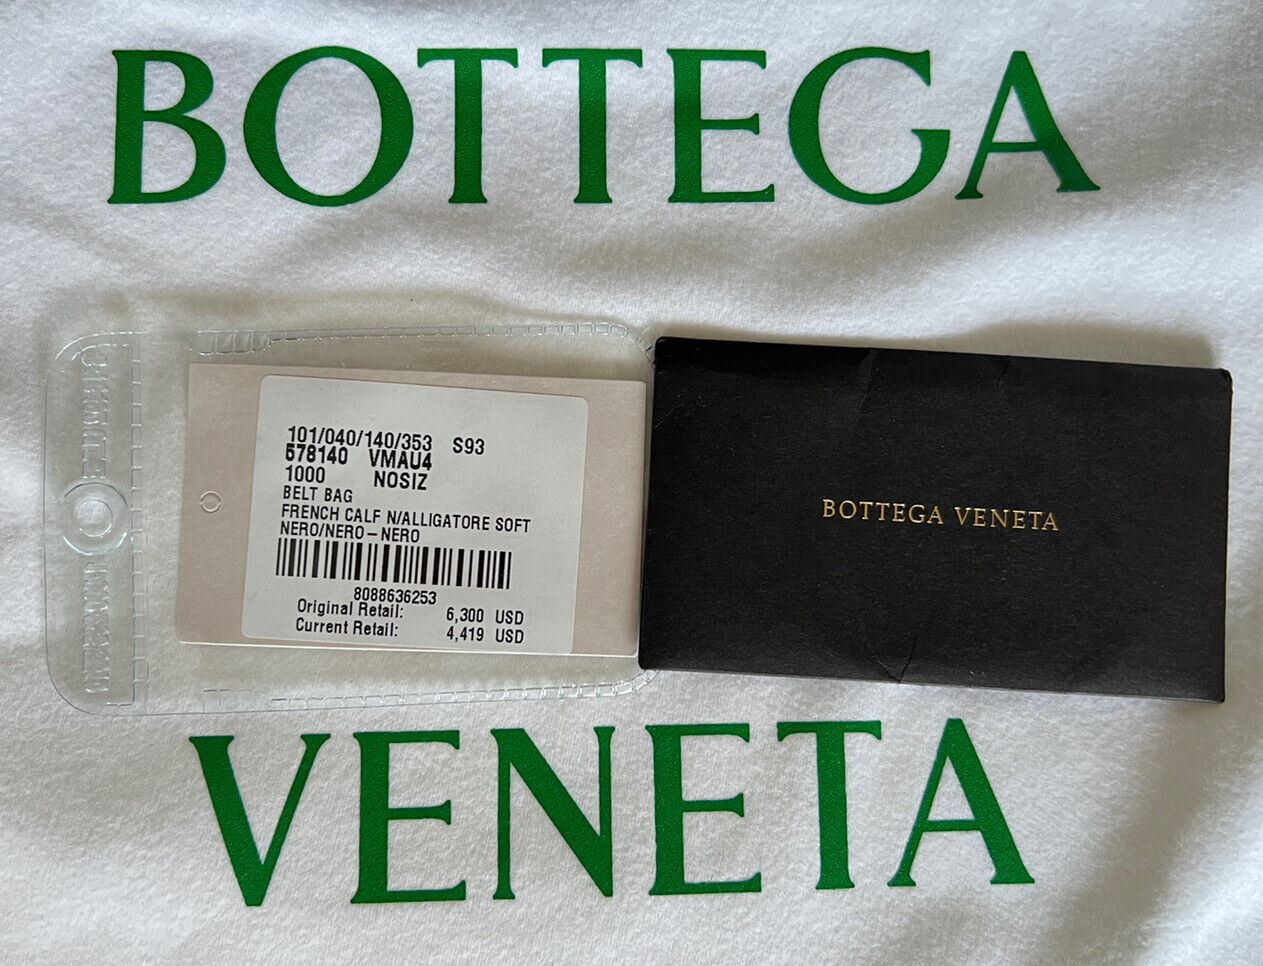 NWT $6300 Сумка Bottega Veneta из кожи аллигатора, черный ремень/пояс/боди 578140 